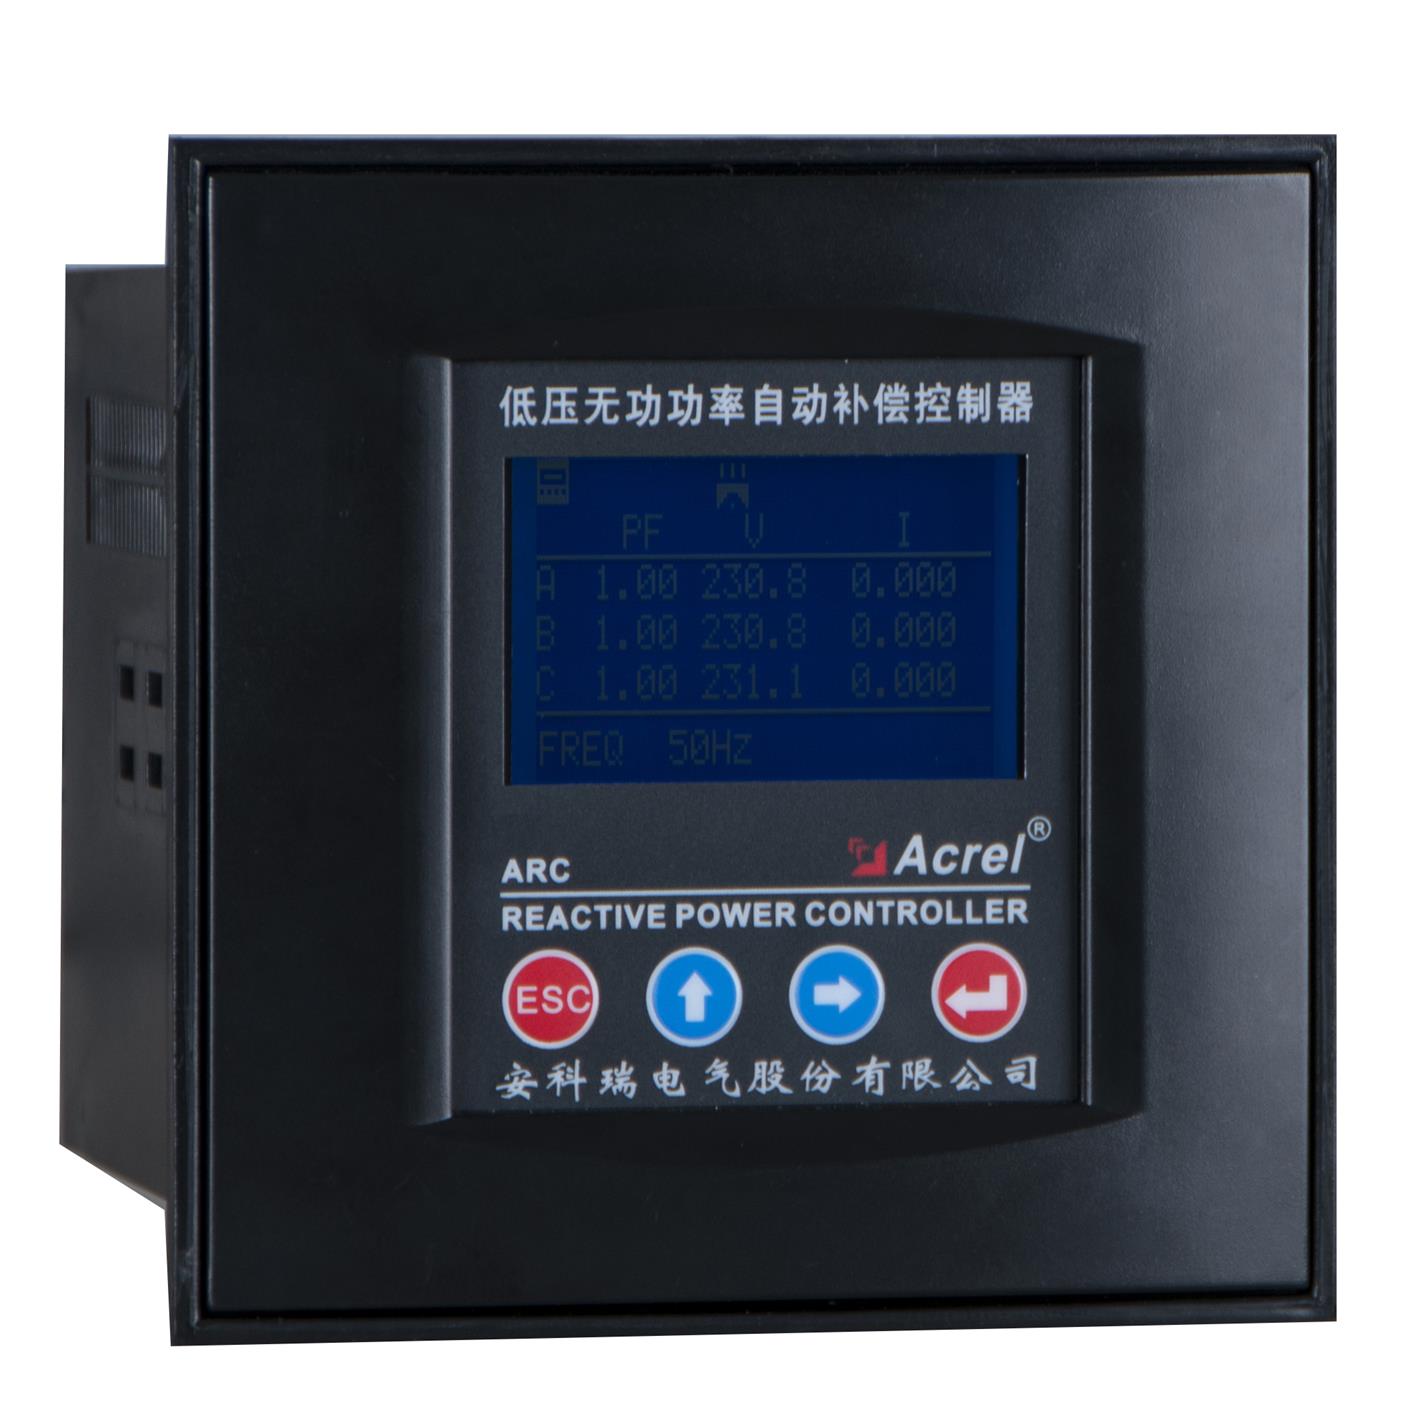 安科瑞ARC-10F/R-C-L液晶显示功率因数自动补偿控制器